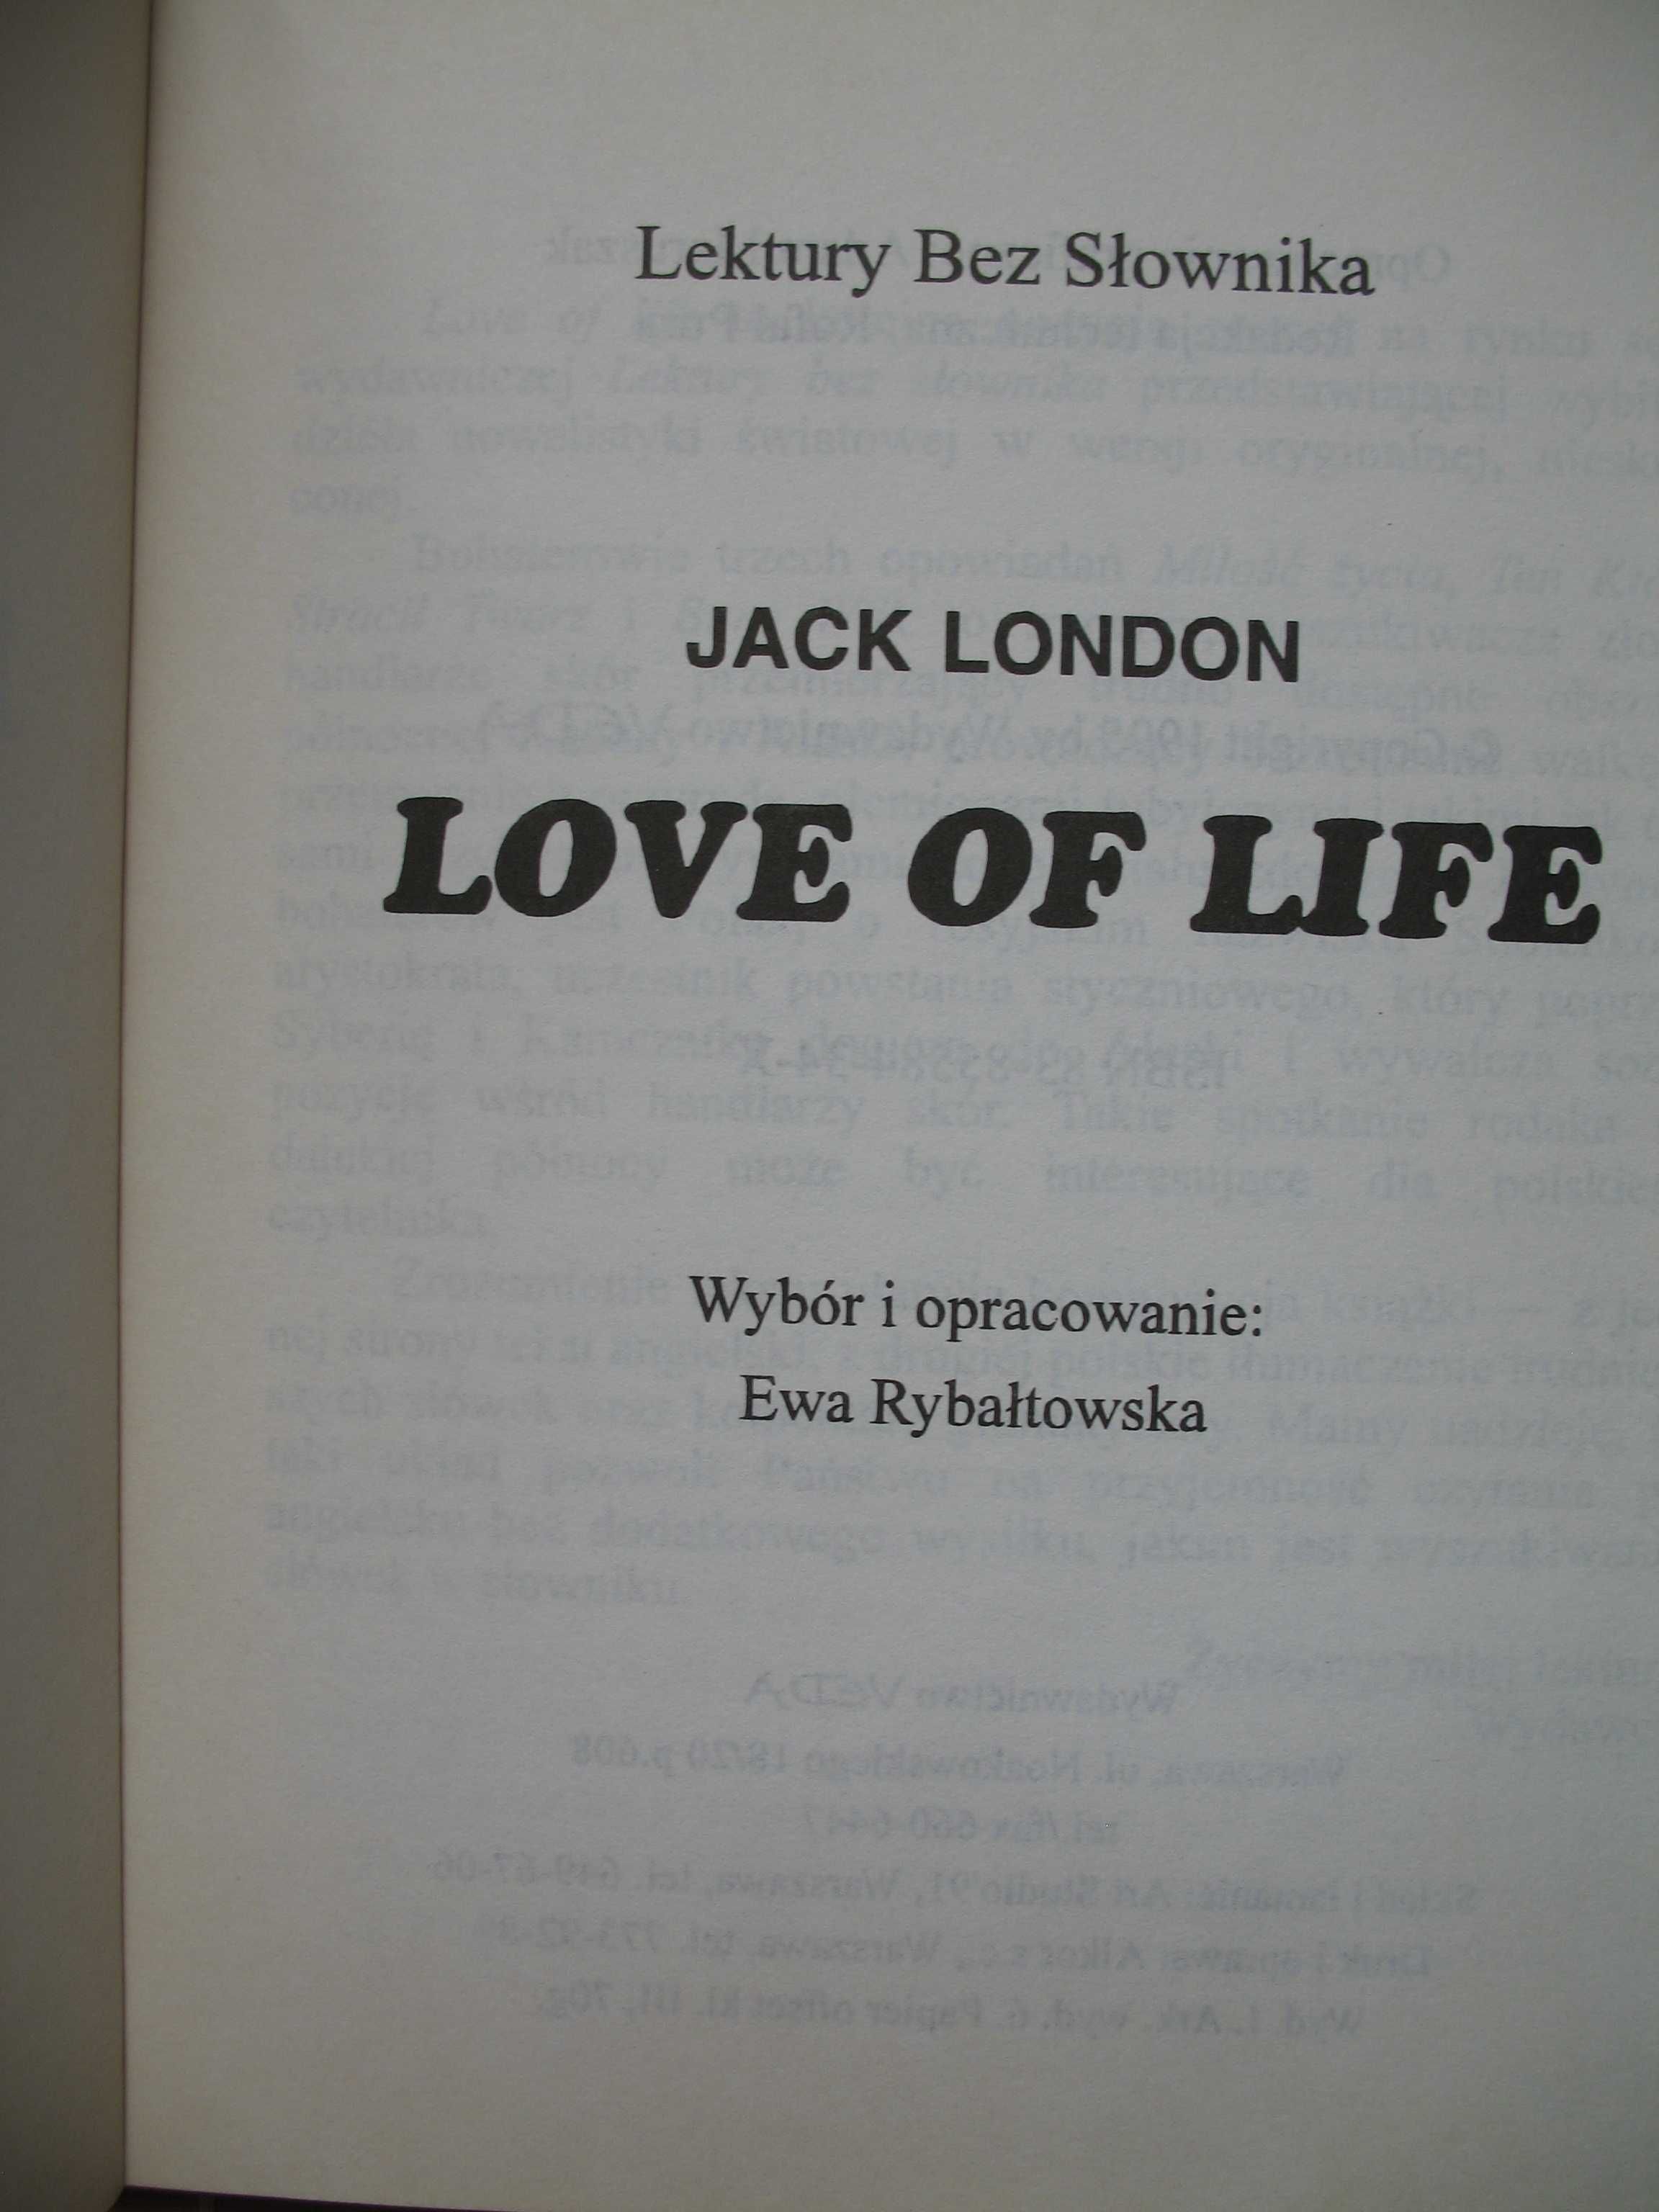 Jack London, Love of Life, trzy nowele w języku angielskim